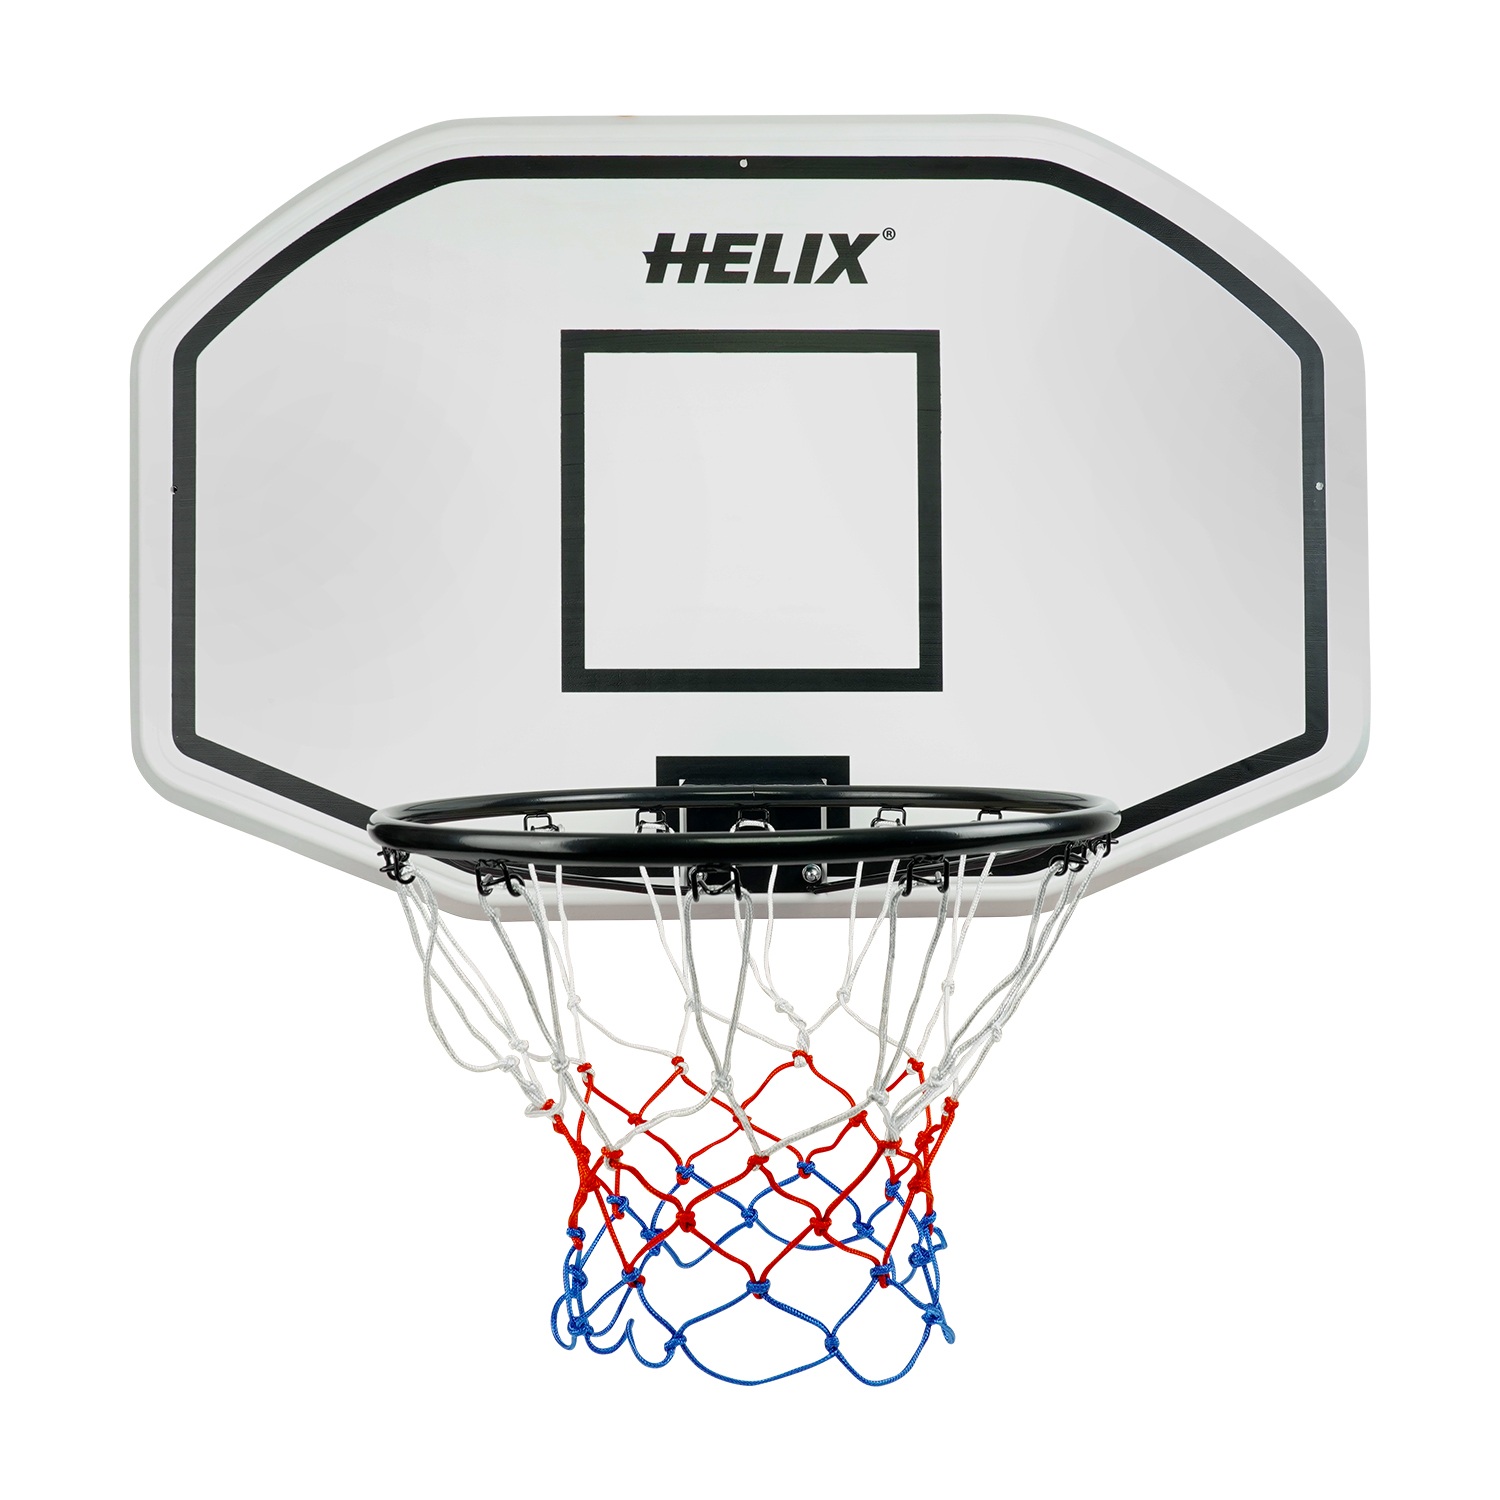 Helix Wall Mounted Basketball Hoop